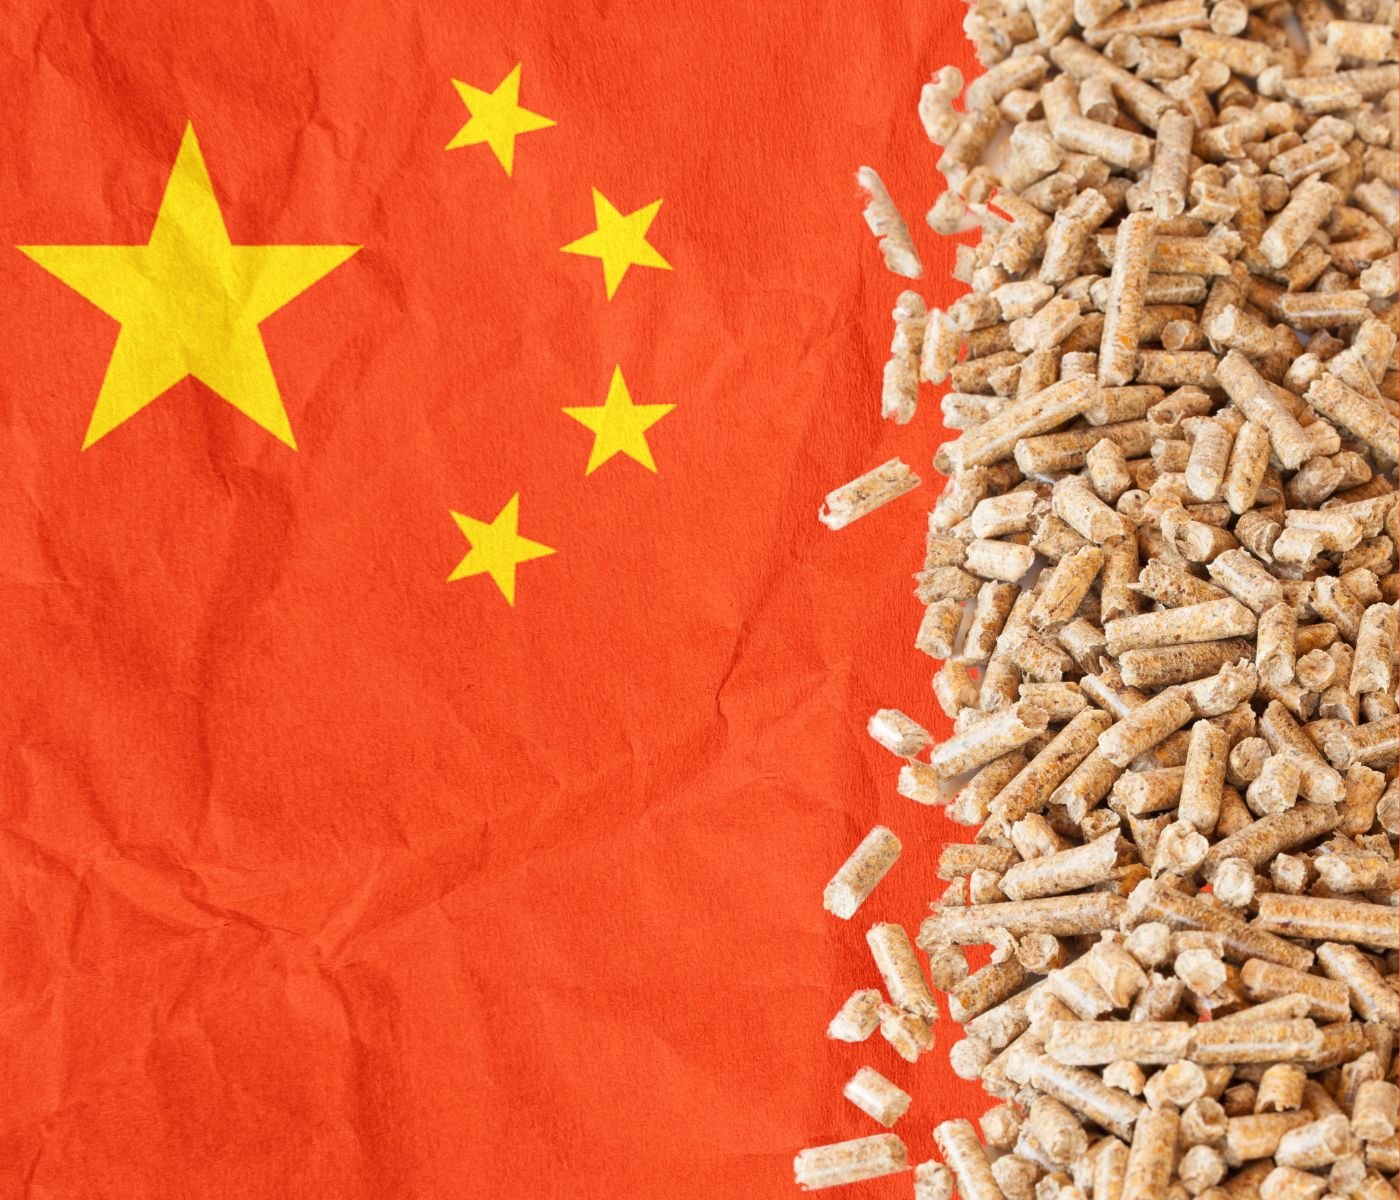 China reduz a inclusão de farelo de soja na alimentação...